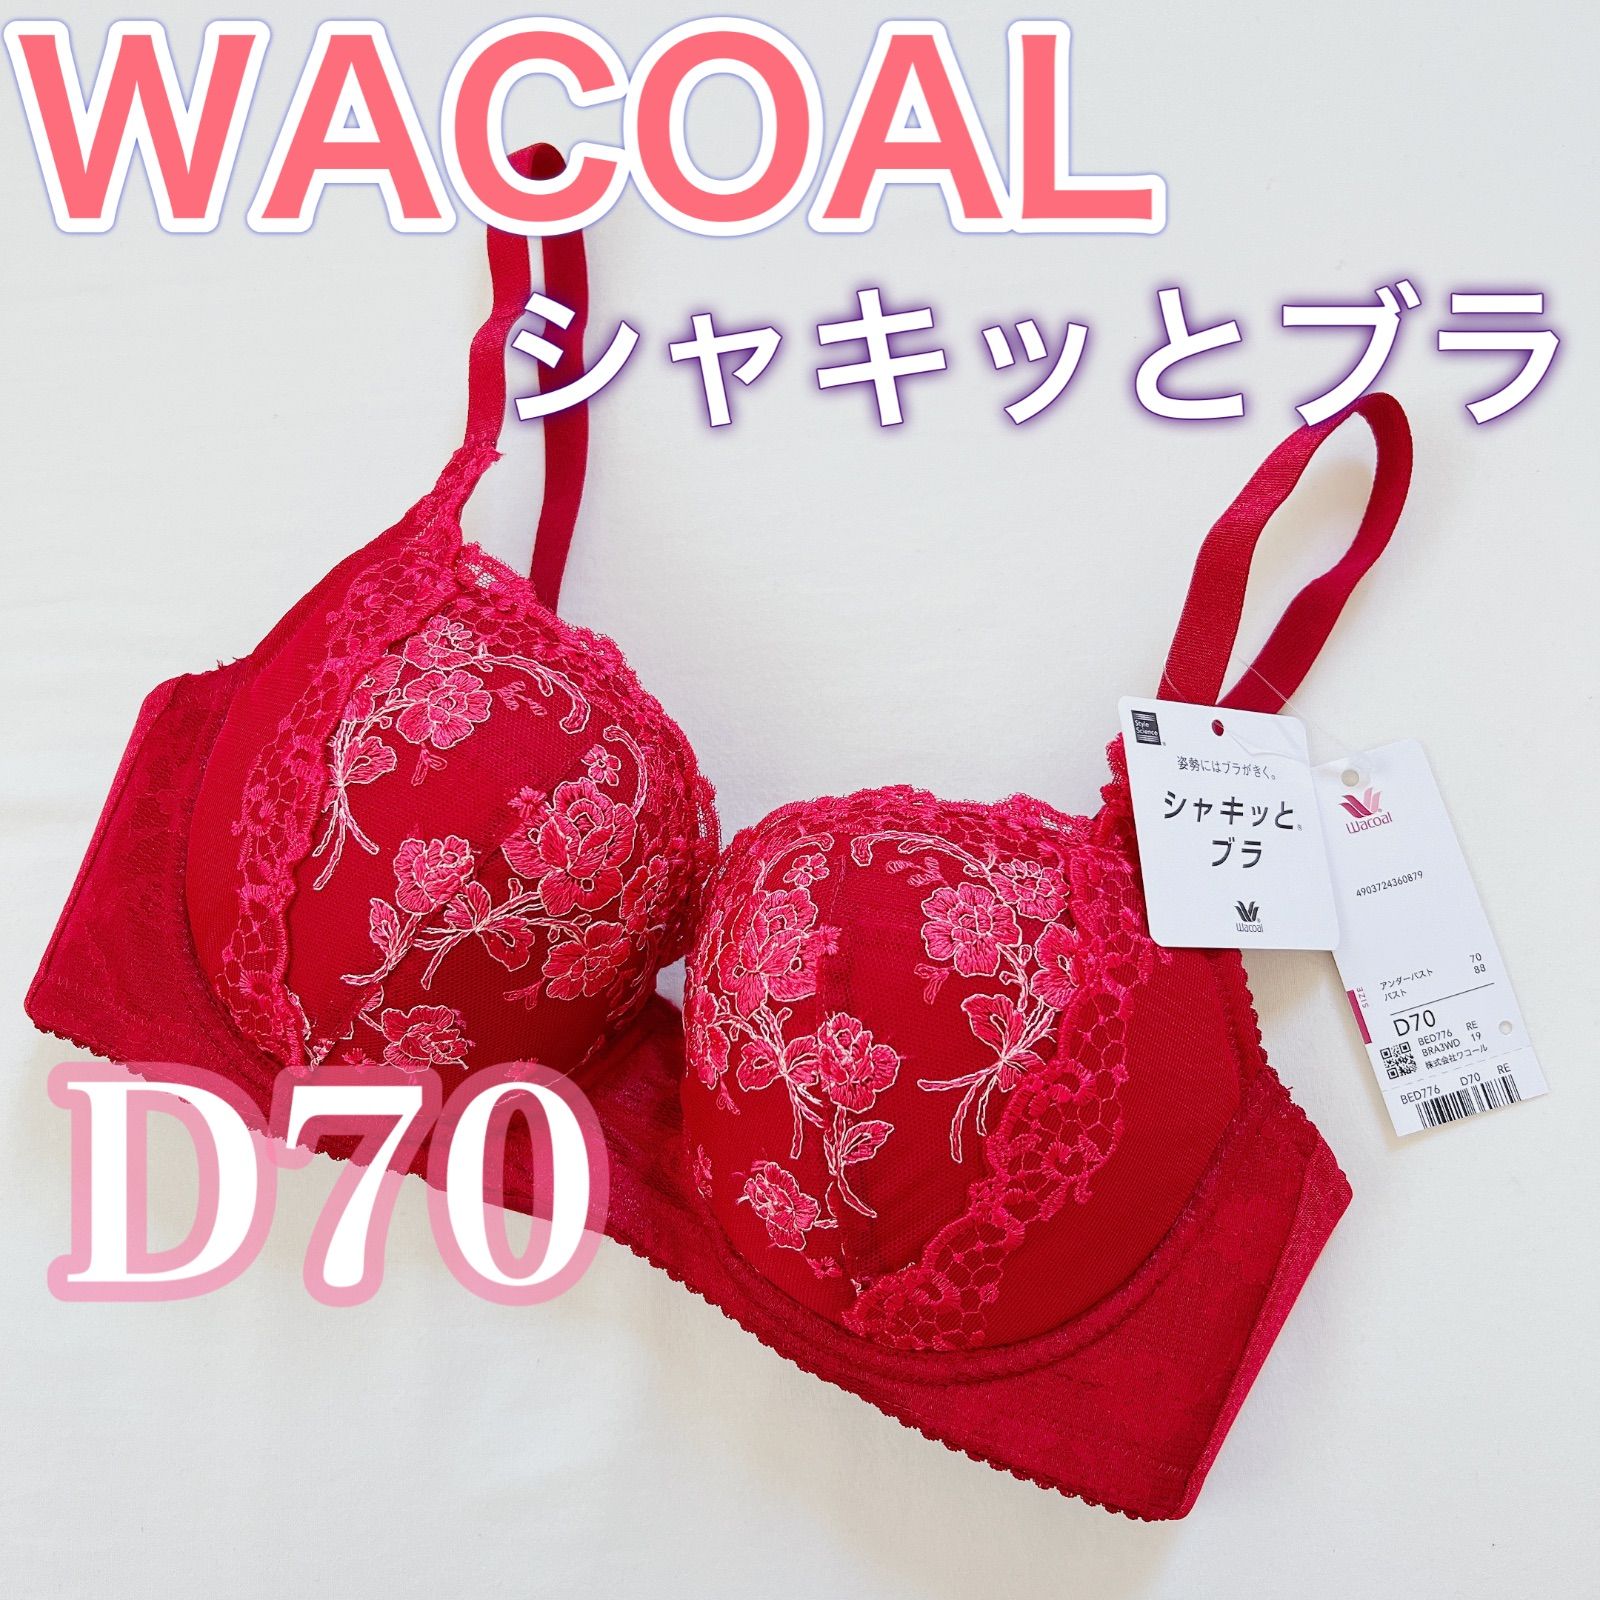 WACOAL【シャキッとブラ】ブラジャー【D70】赤 下着 - メルカリ